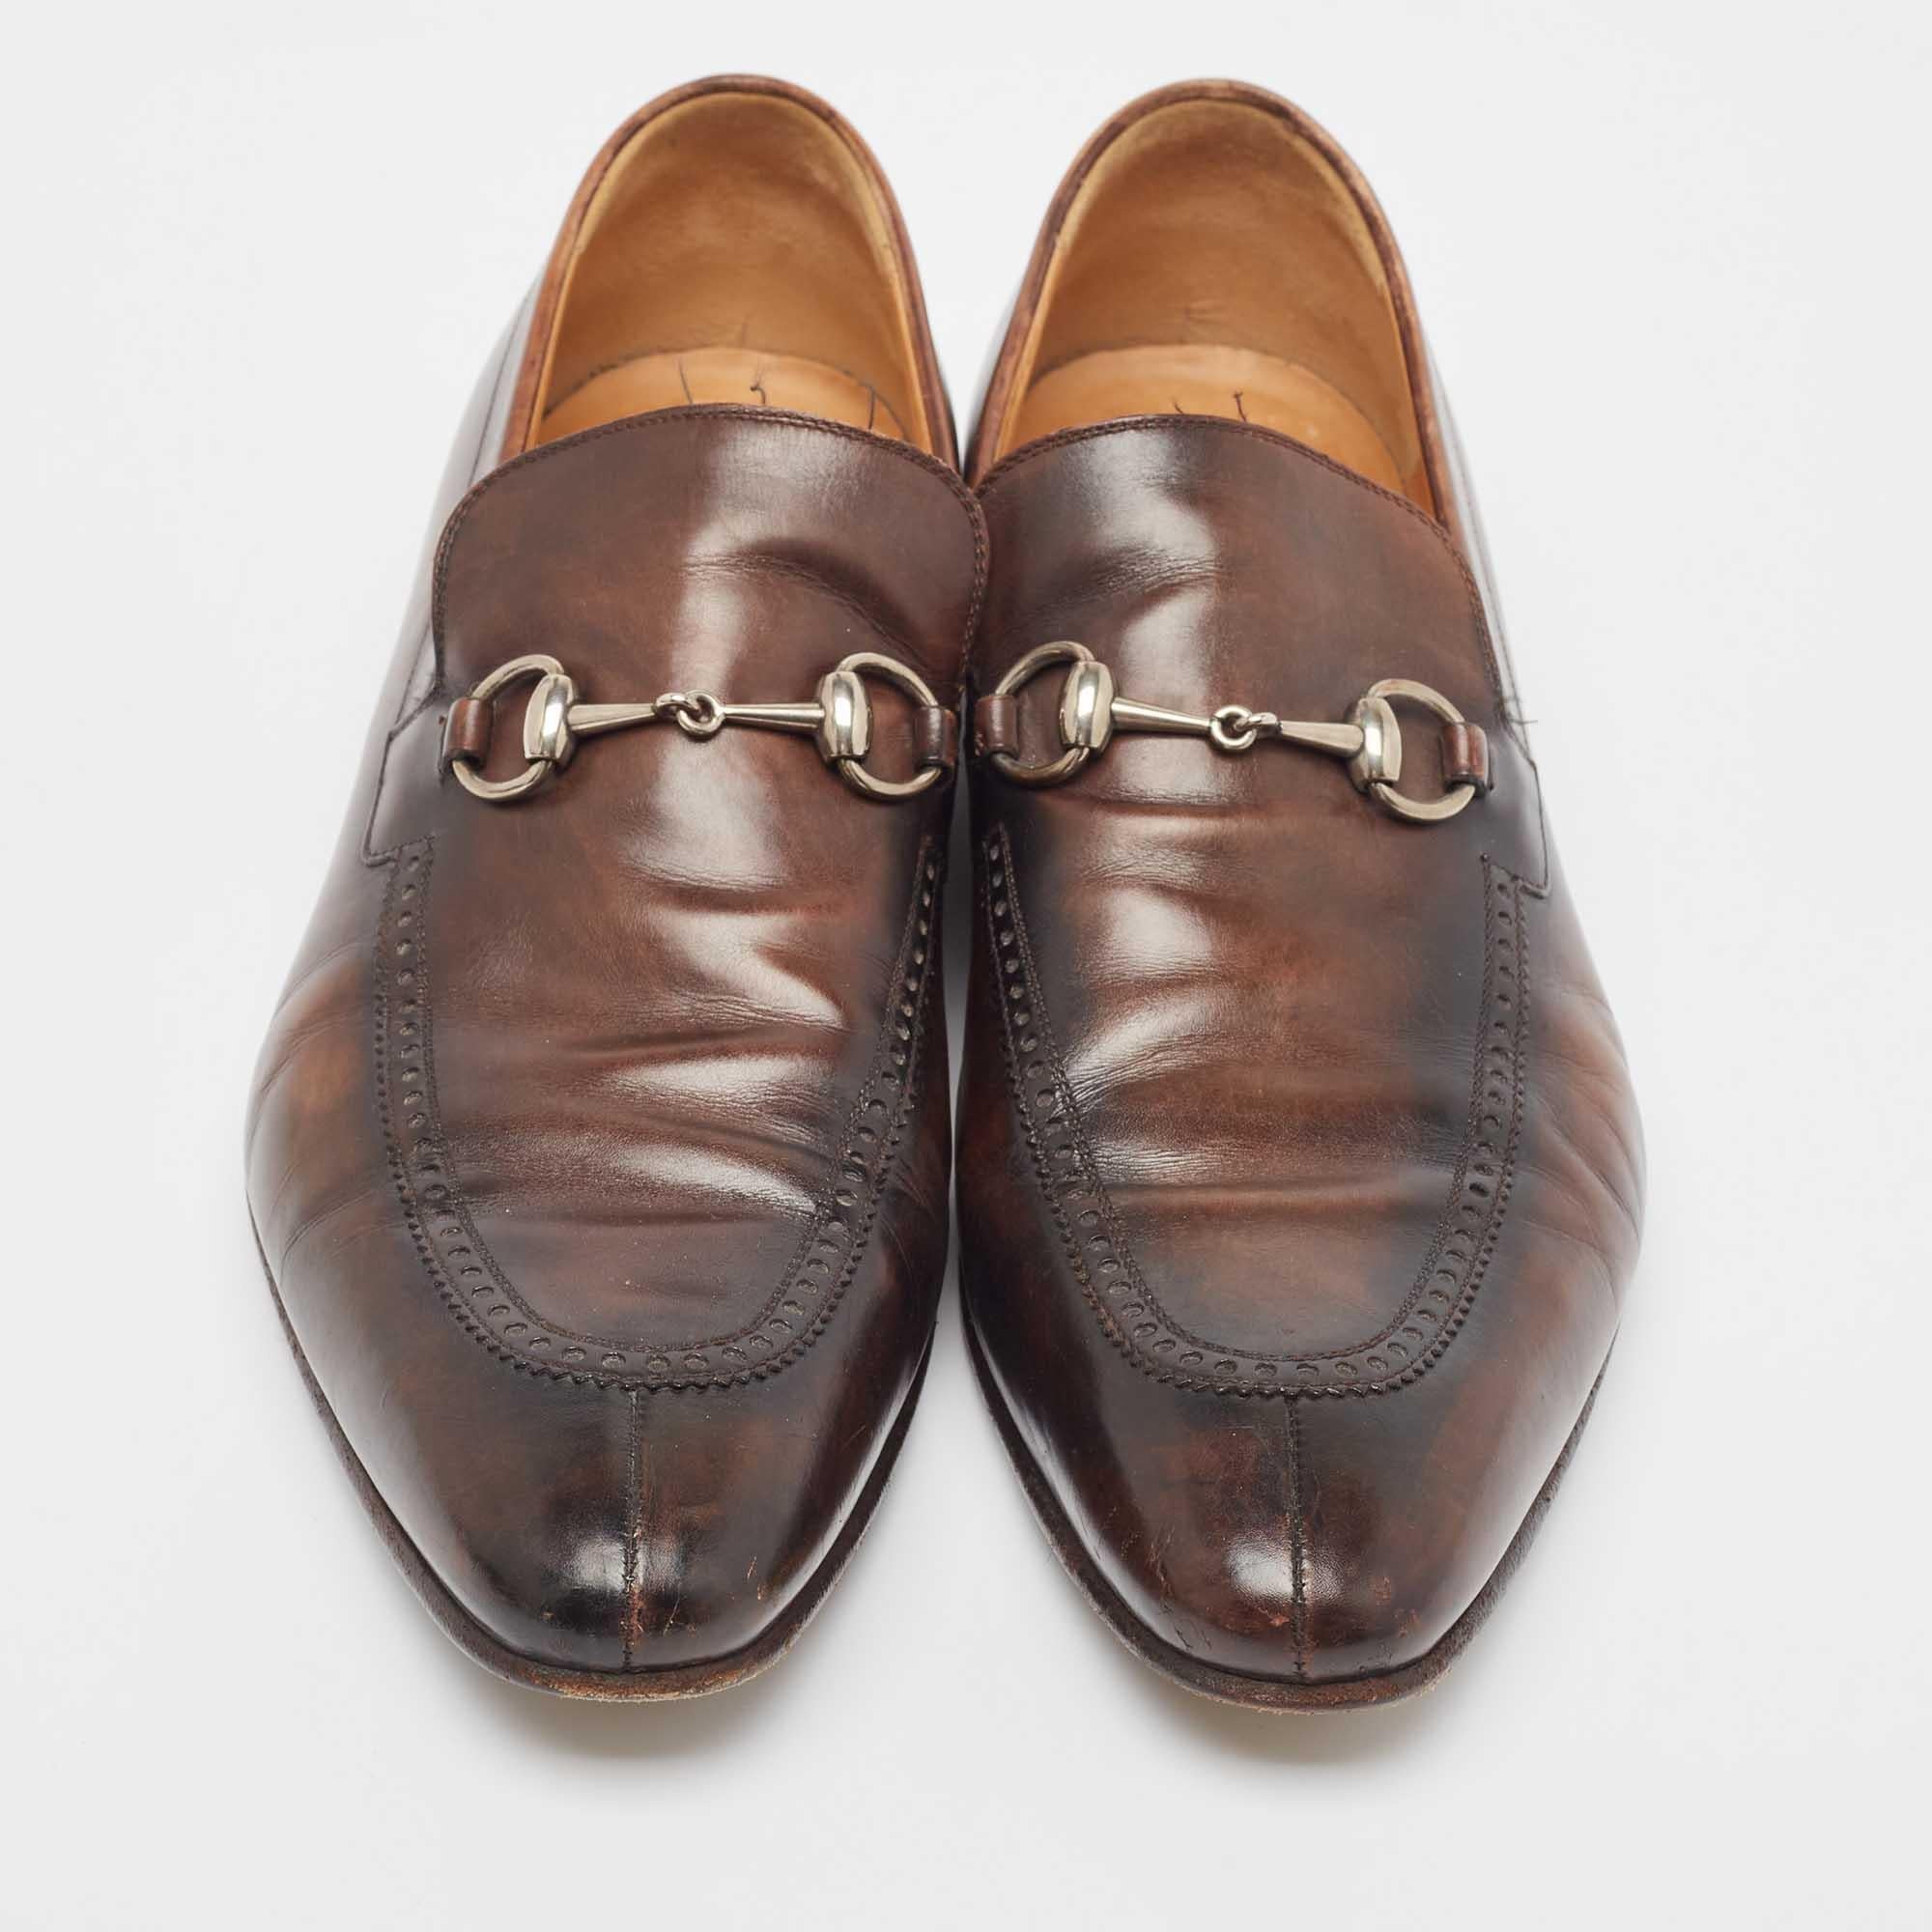 Ces chaussures Gucci Horsebit visent à offrir un résultat à la pointe de la mode. Fabriquées en cuir, ces chaussures sont aussi durables qu'attrayantes.

Comprend : Sac à poussière original

